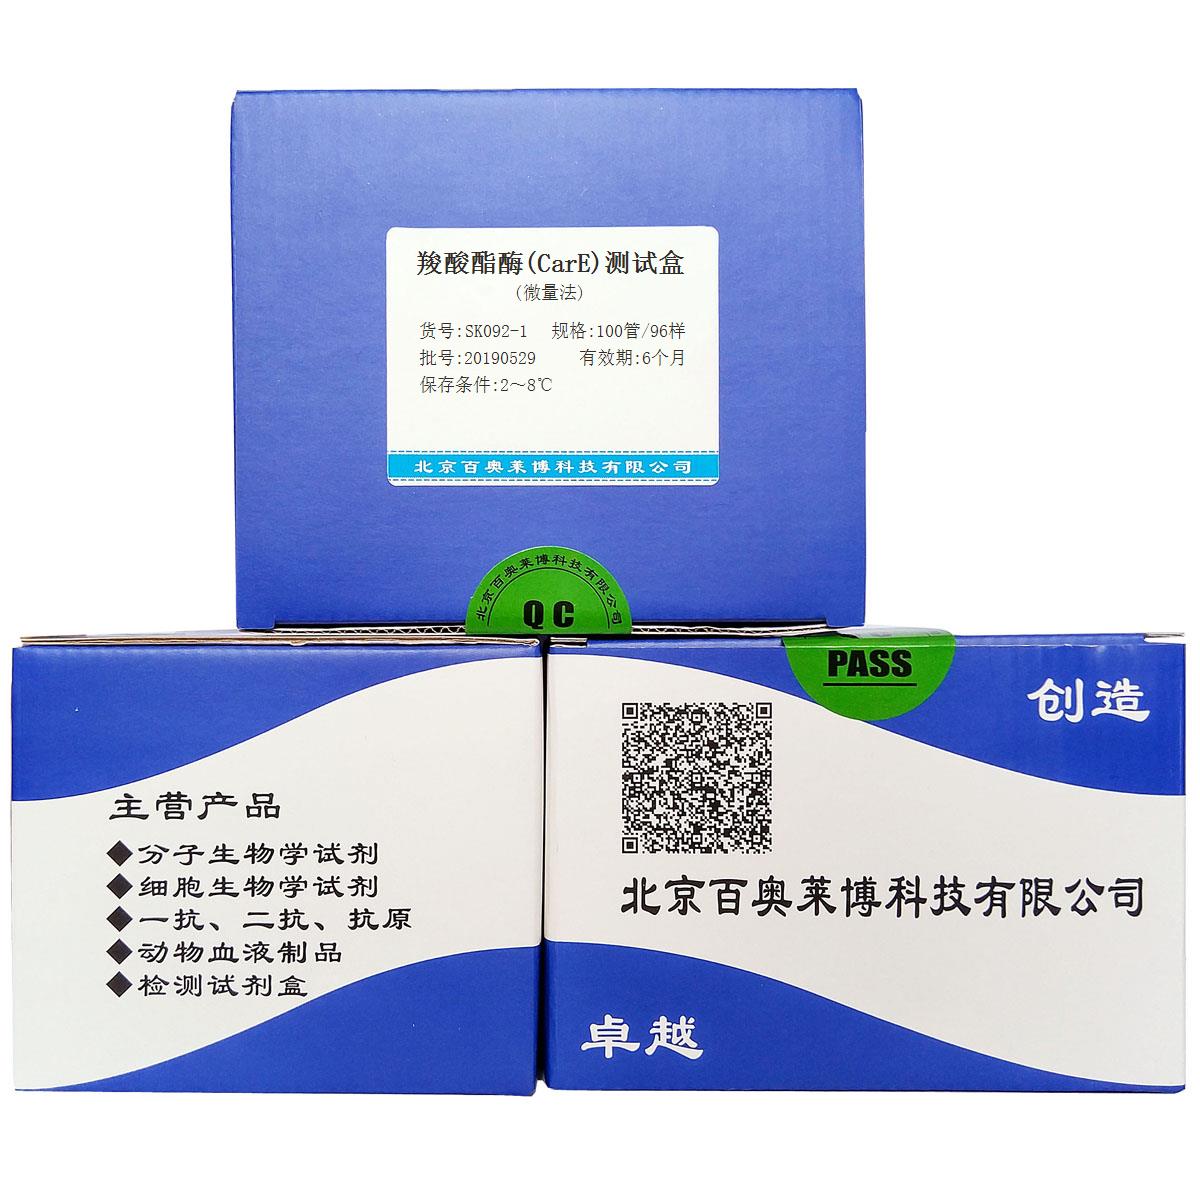 羧酸酯酶(CarE)测试盒(微量法)北京厂家